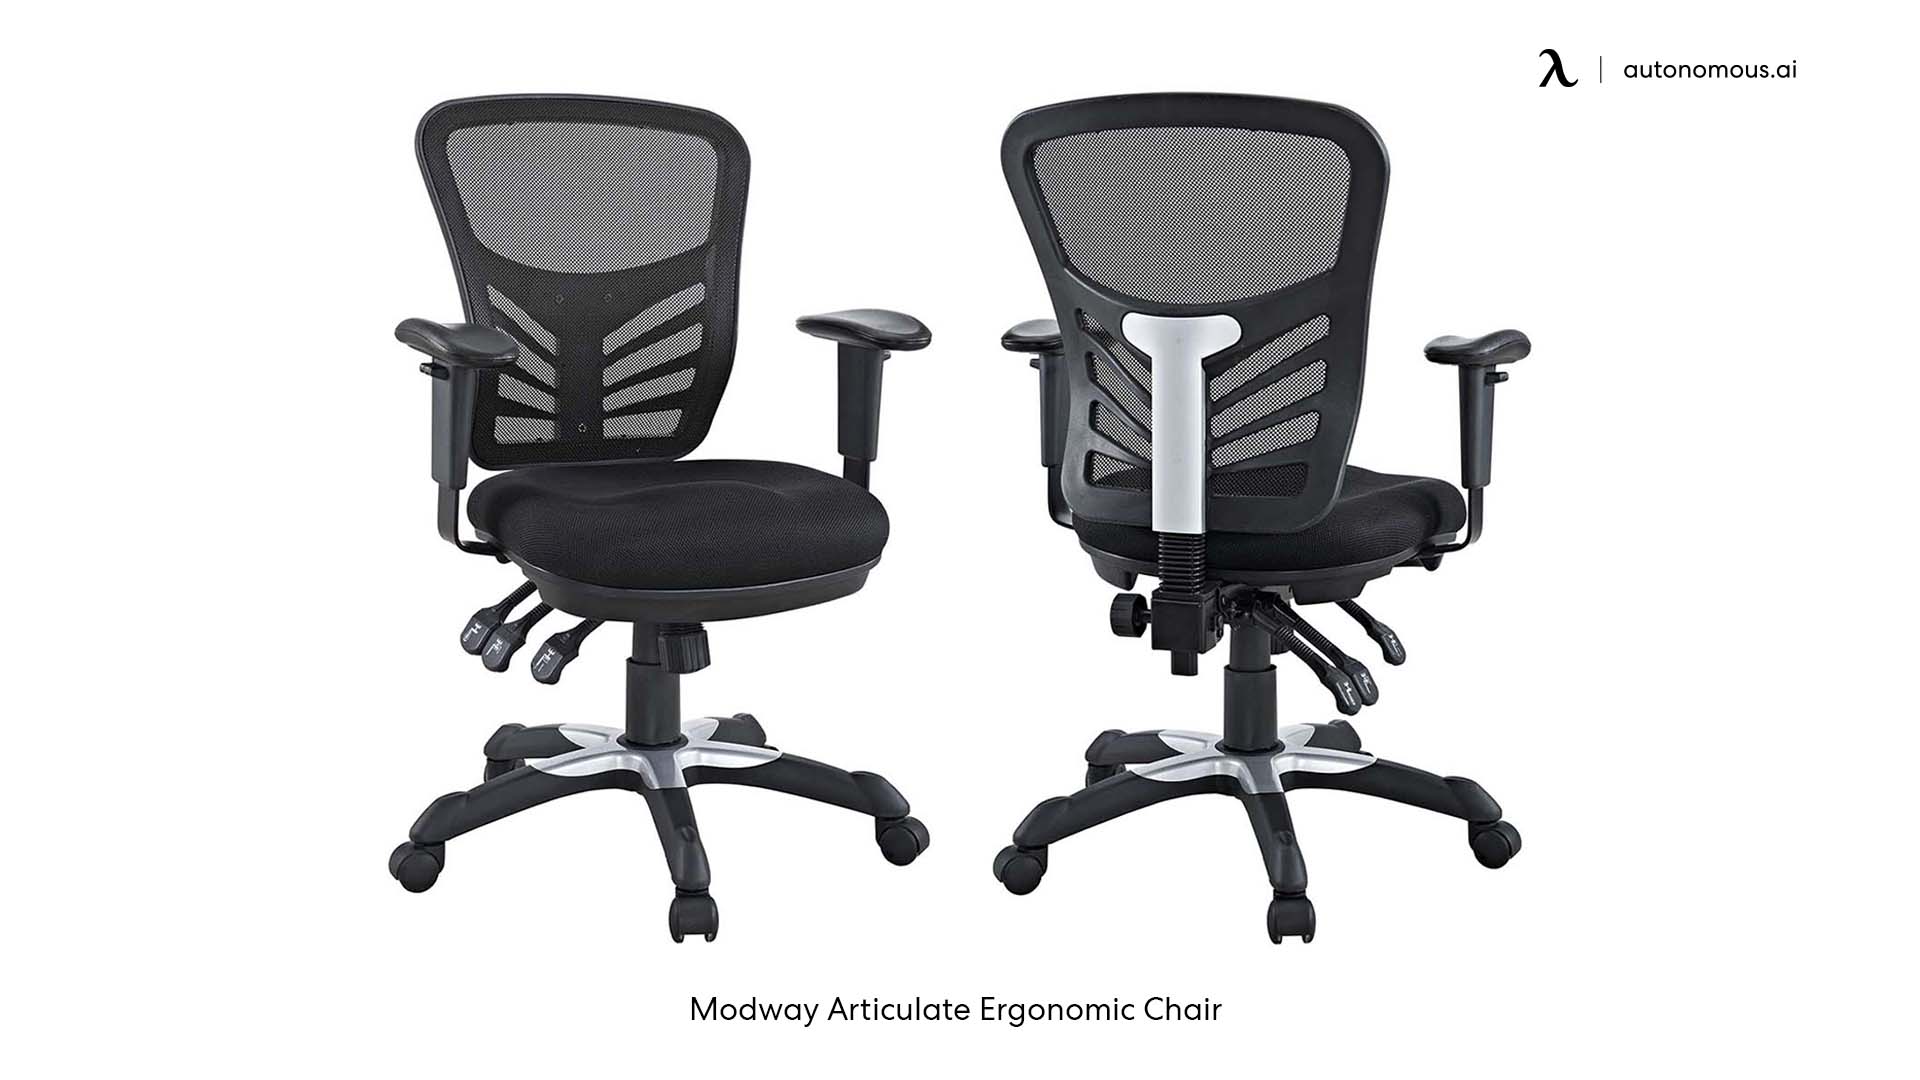 Modway Articulate Ergonomic Chair